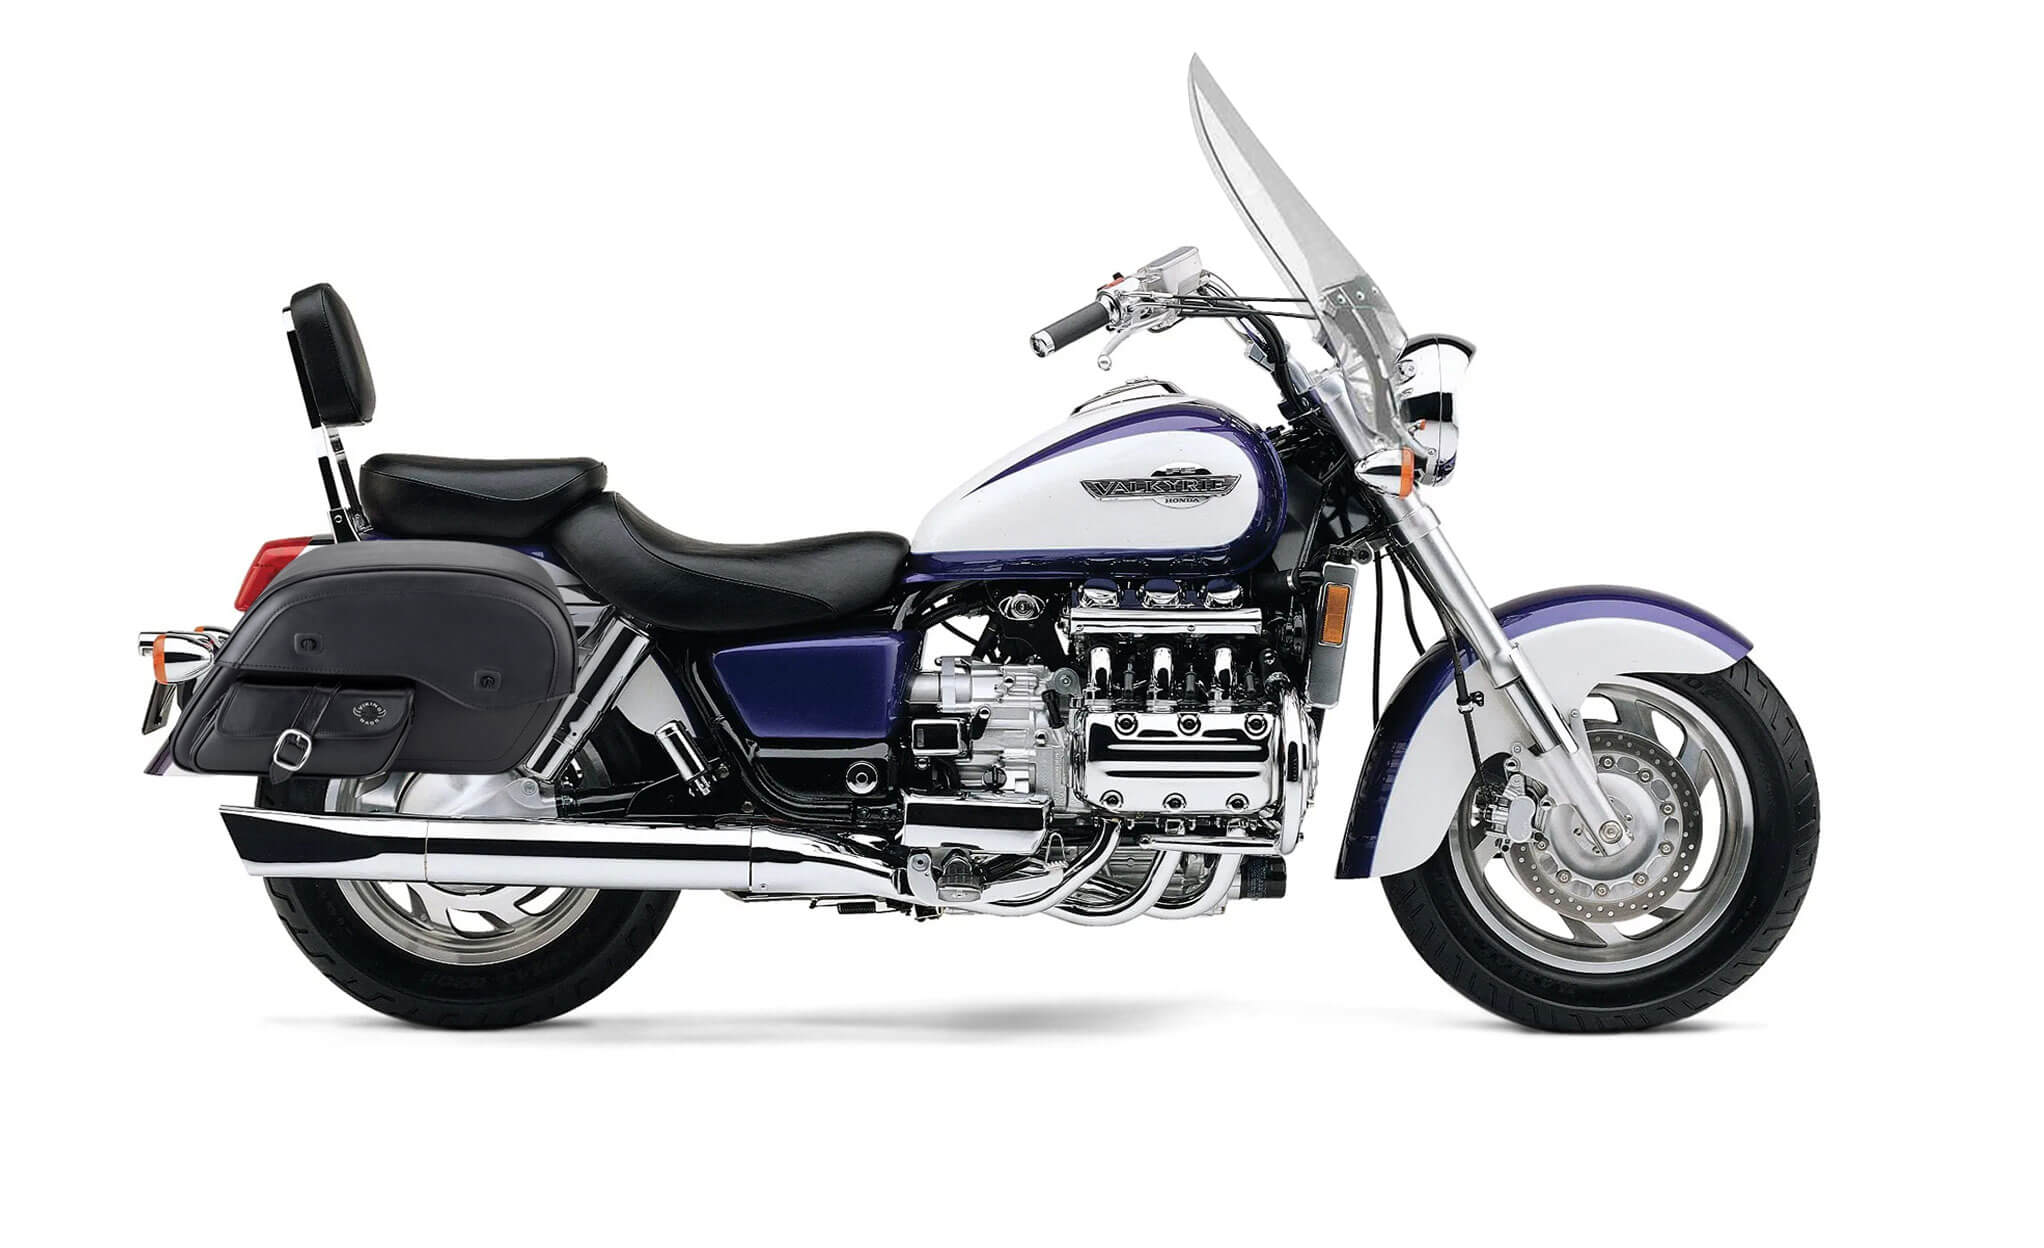 Viking Dweller Side Pocket Large Honda Valkyrie 1500 Tourer Leather Motorcycle Saddlebags on Bike Photo @expand